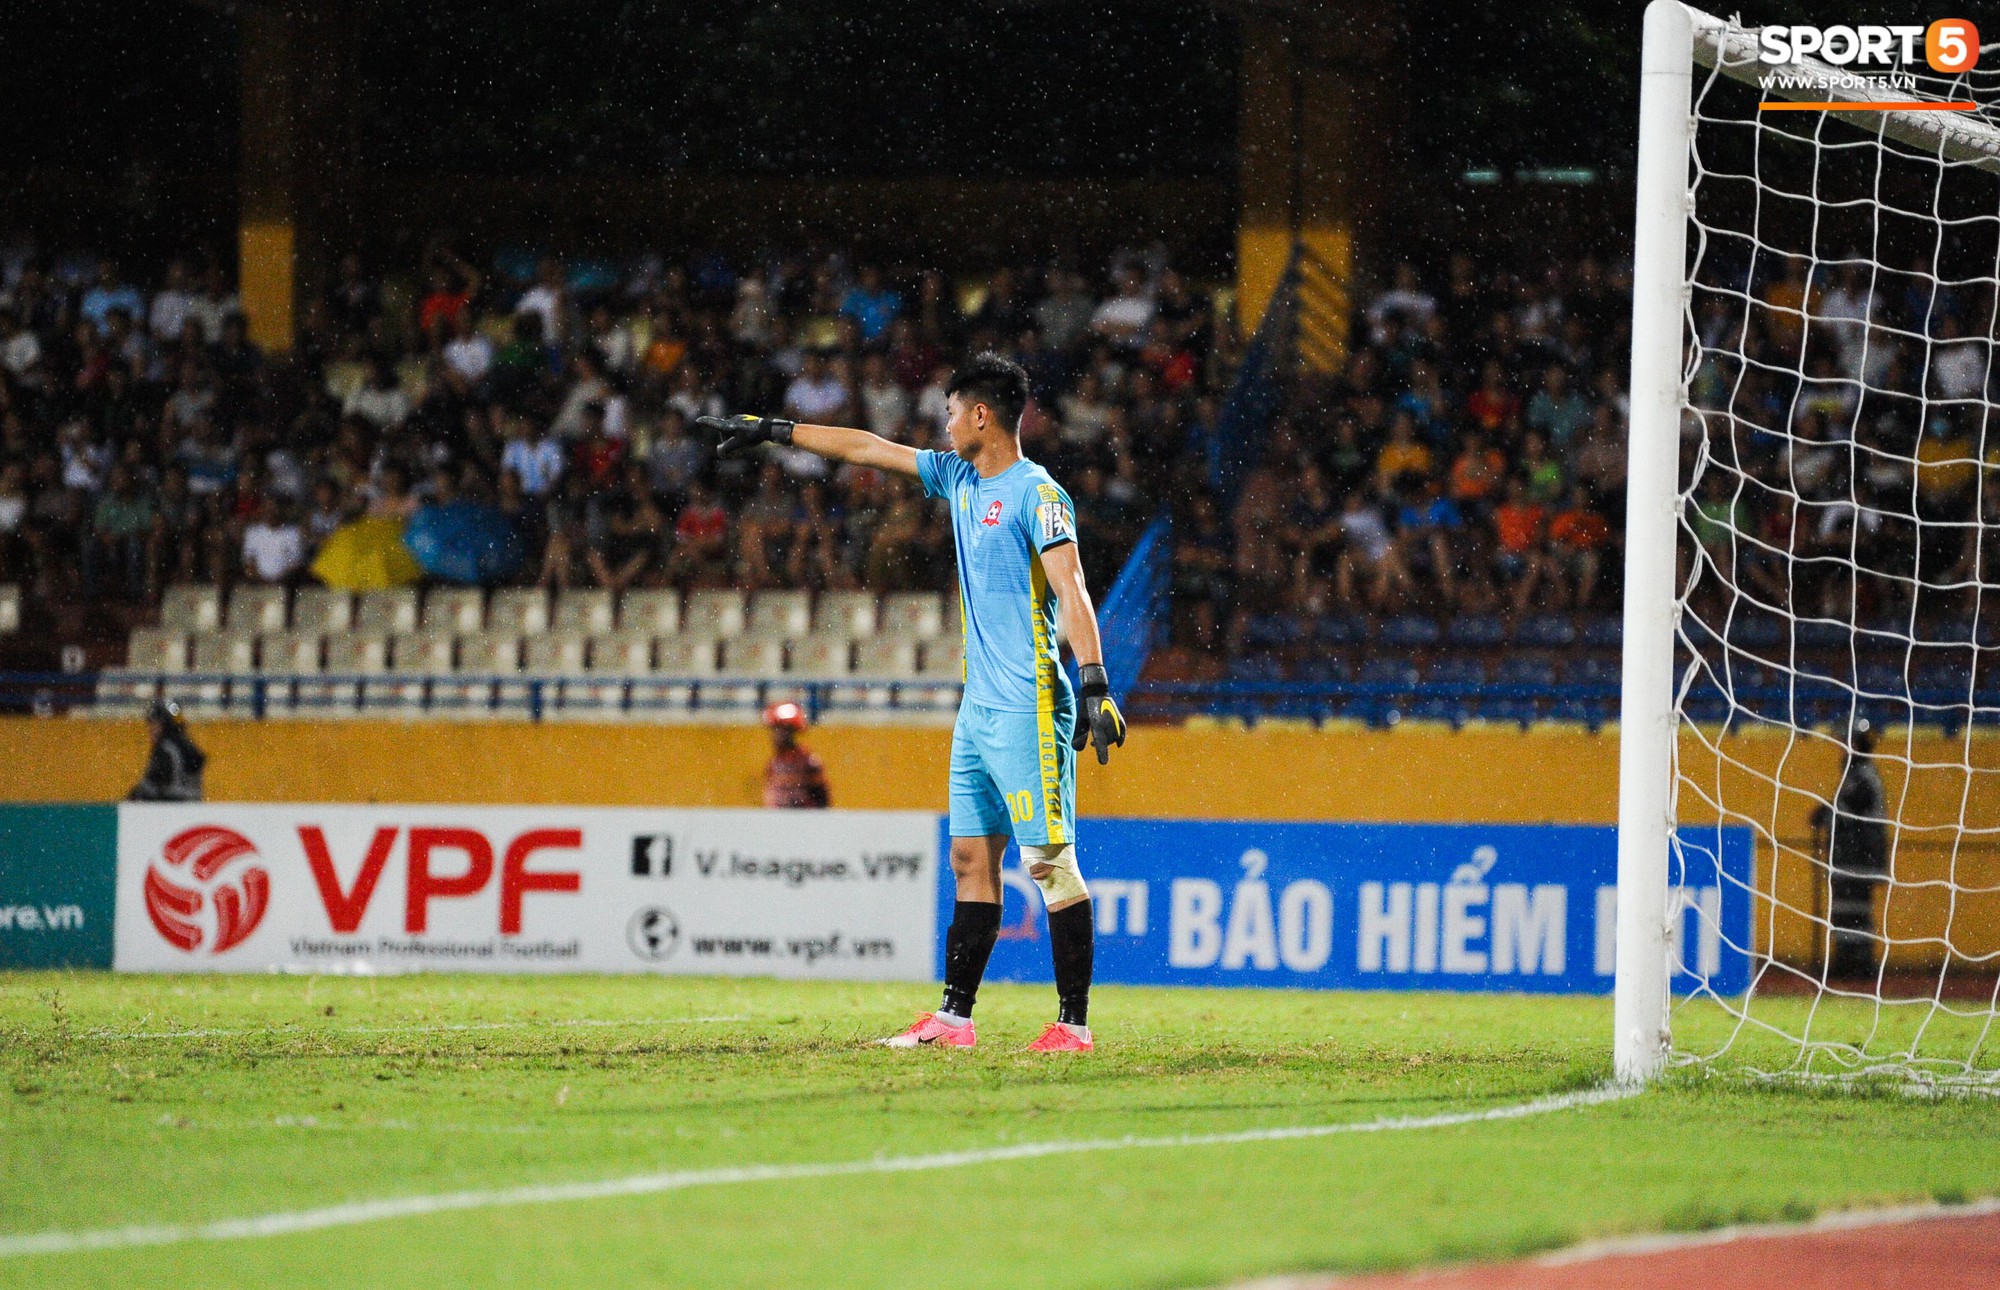 Thủ môn trẻ tài năng của U23 Việt Nam nhận lời cảnh báo sau trận thuỷ chiến trên sân Hàng Đẫy - Ảnh 5.